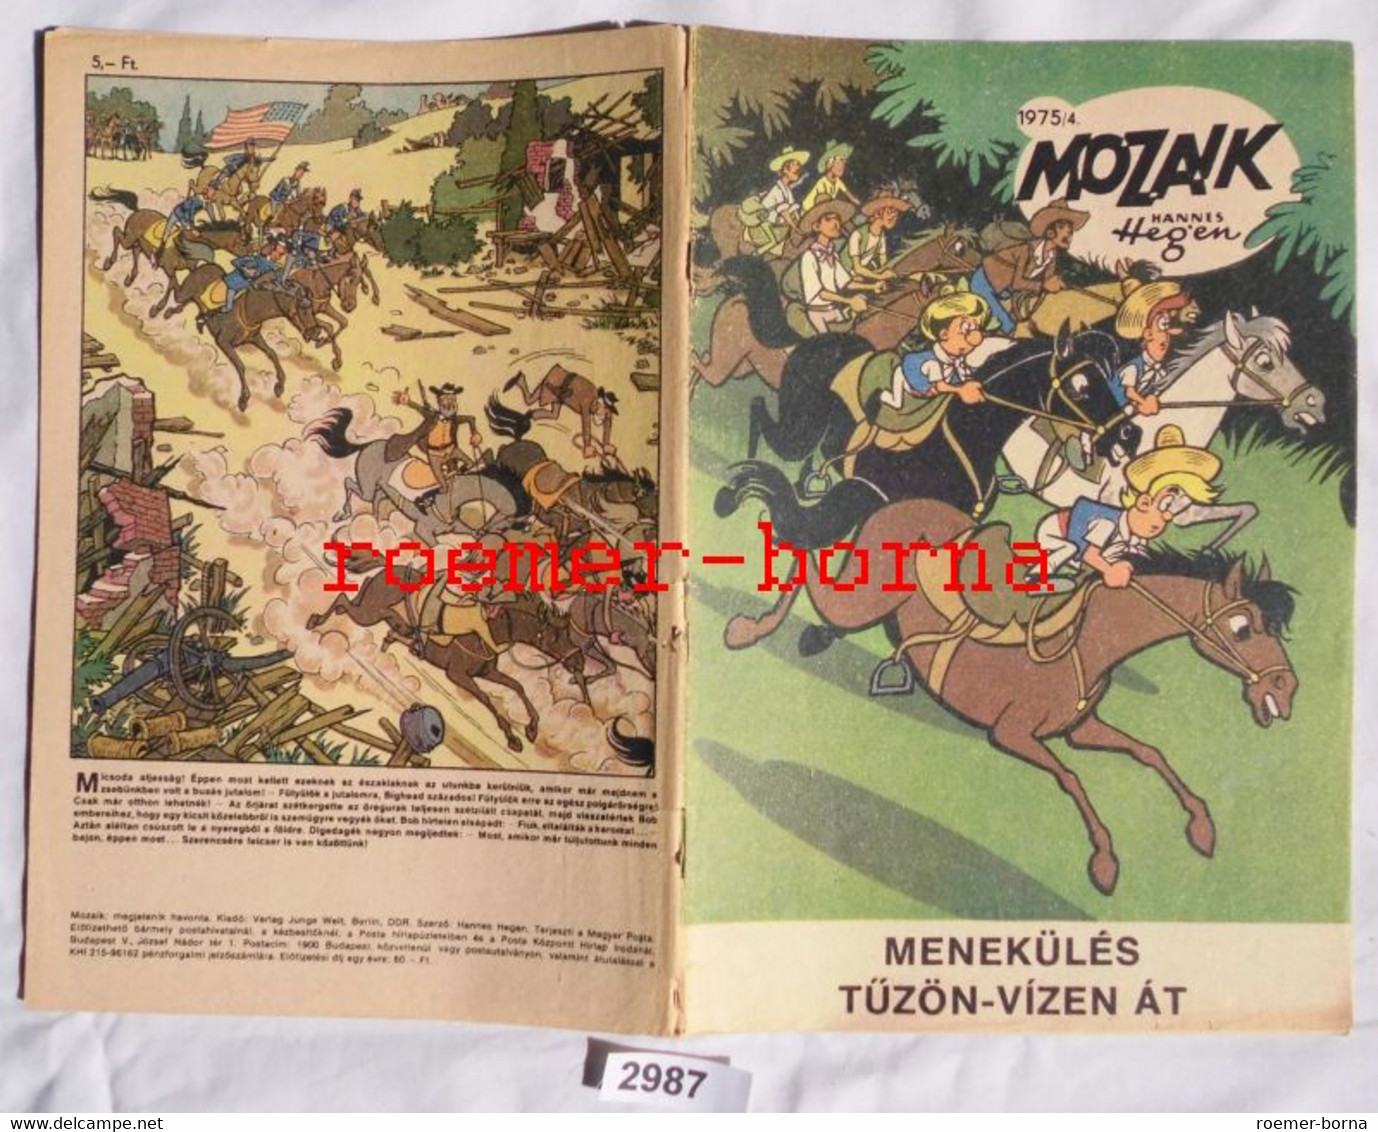 Mozaik Mosaik Von Hannes Hegen Seltene Export Ausgabe Für Ungarn Nr 1975/4 (entspricht Heft 210) - Digedags